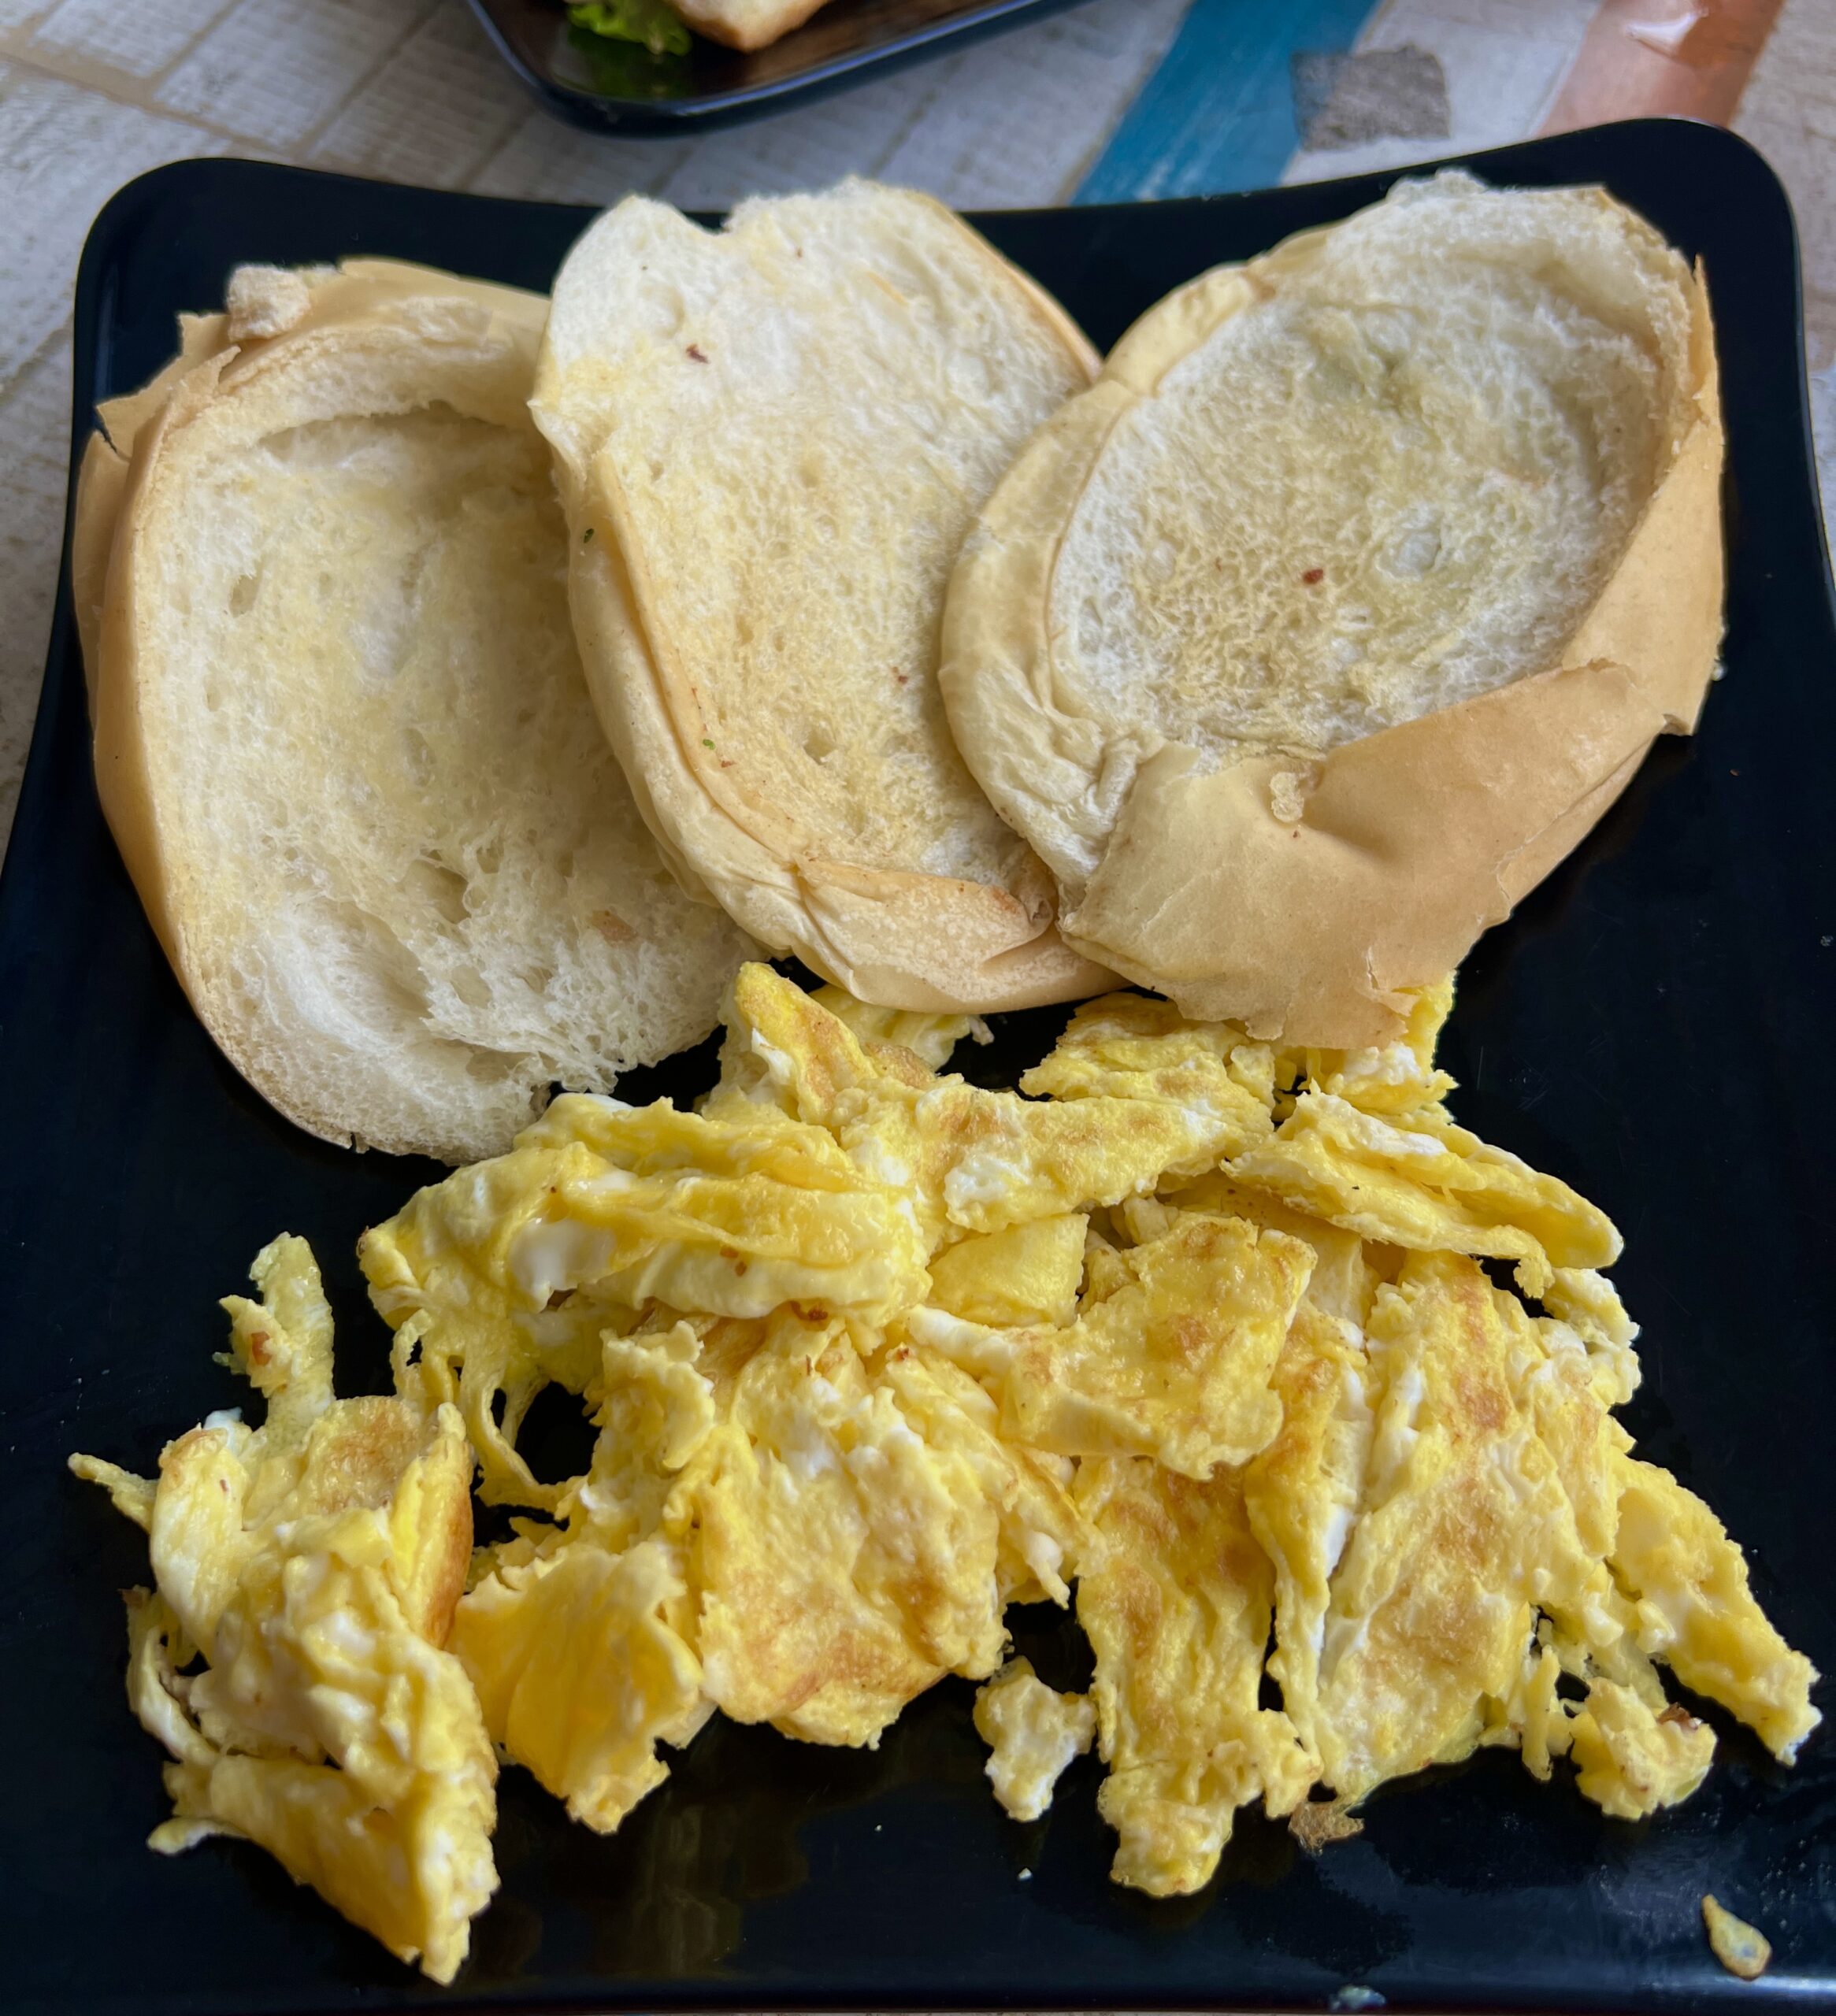 Bread + Eggs 